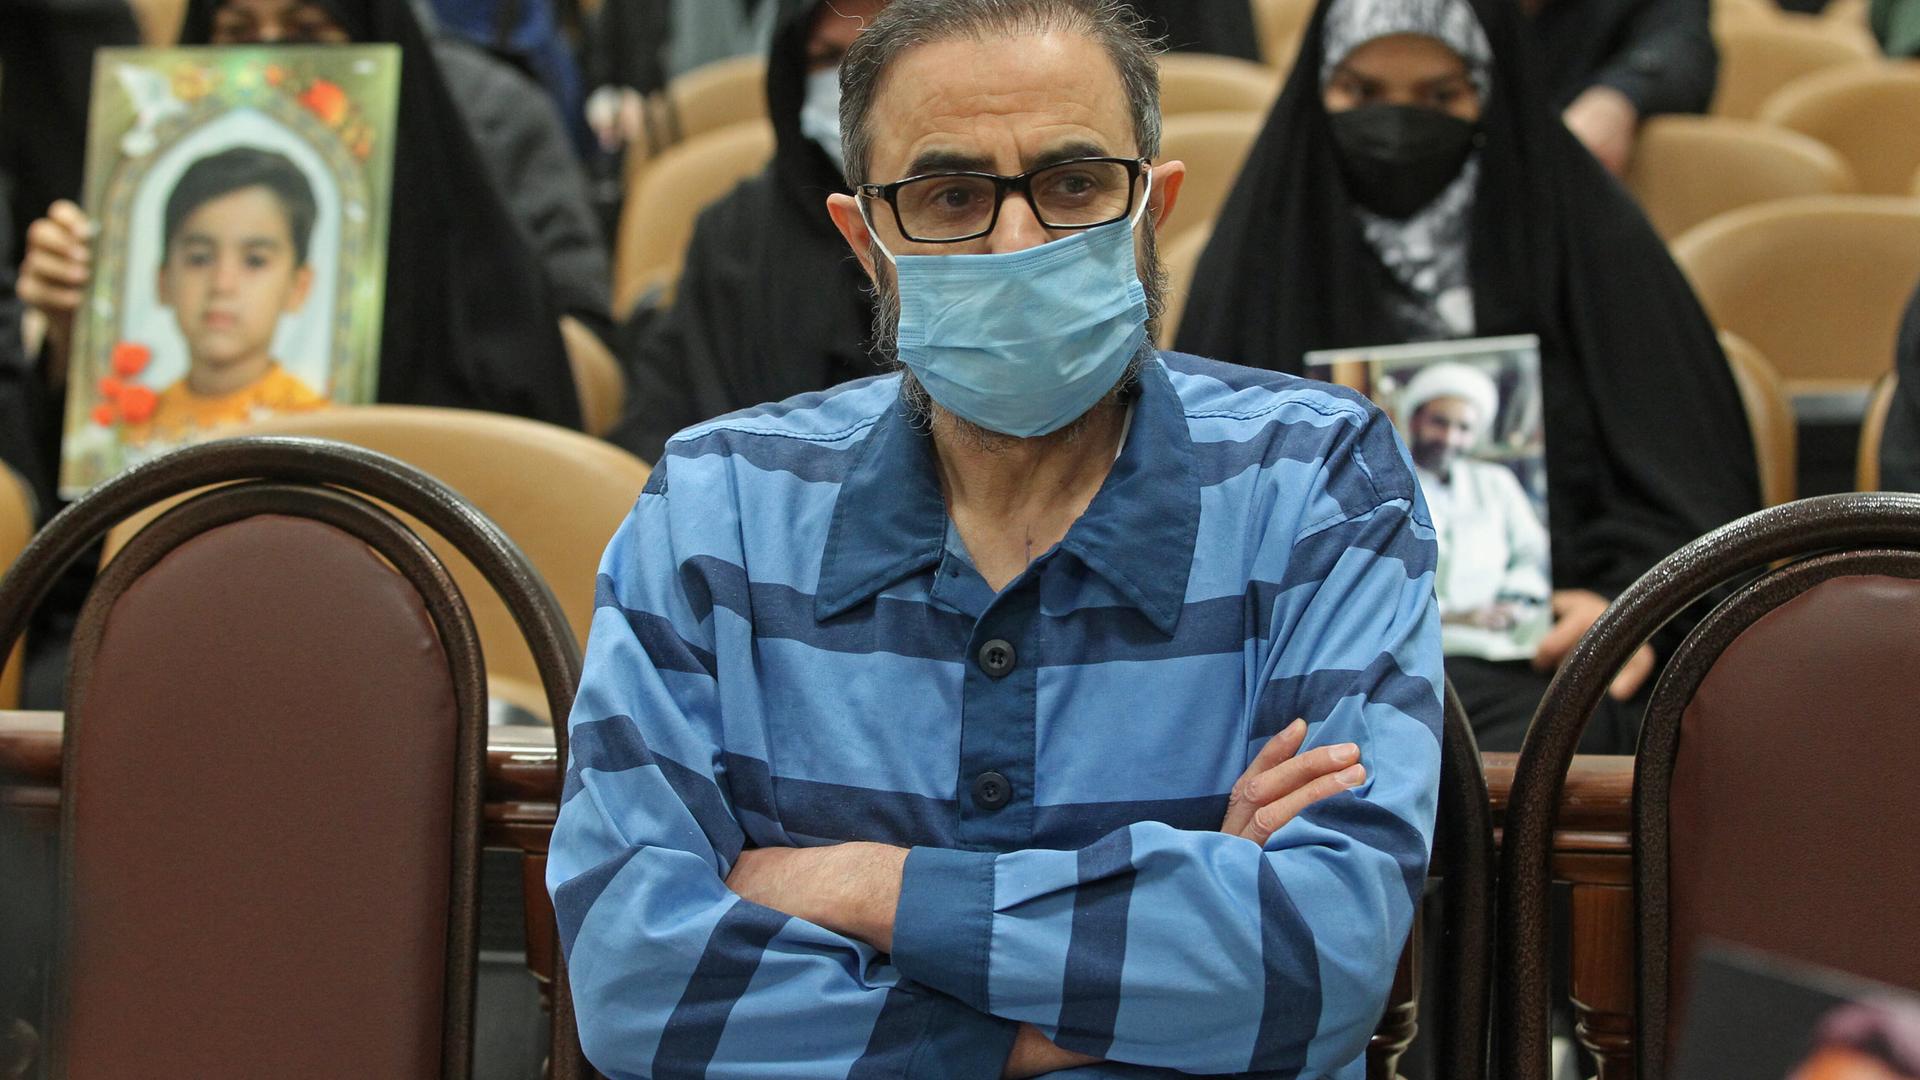 Habib Chaab bei der ersten Anhörung in seinem Prozess Mitte Januar 2022. Er hat die Arme verschränkt und trägt einen Mund-Nasen-Schutz. Im Zuschauerbereich sitzen verschleierte Frauen.